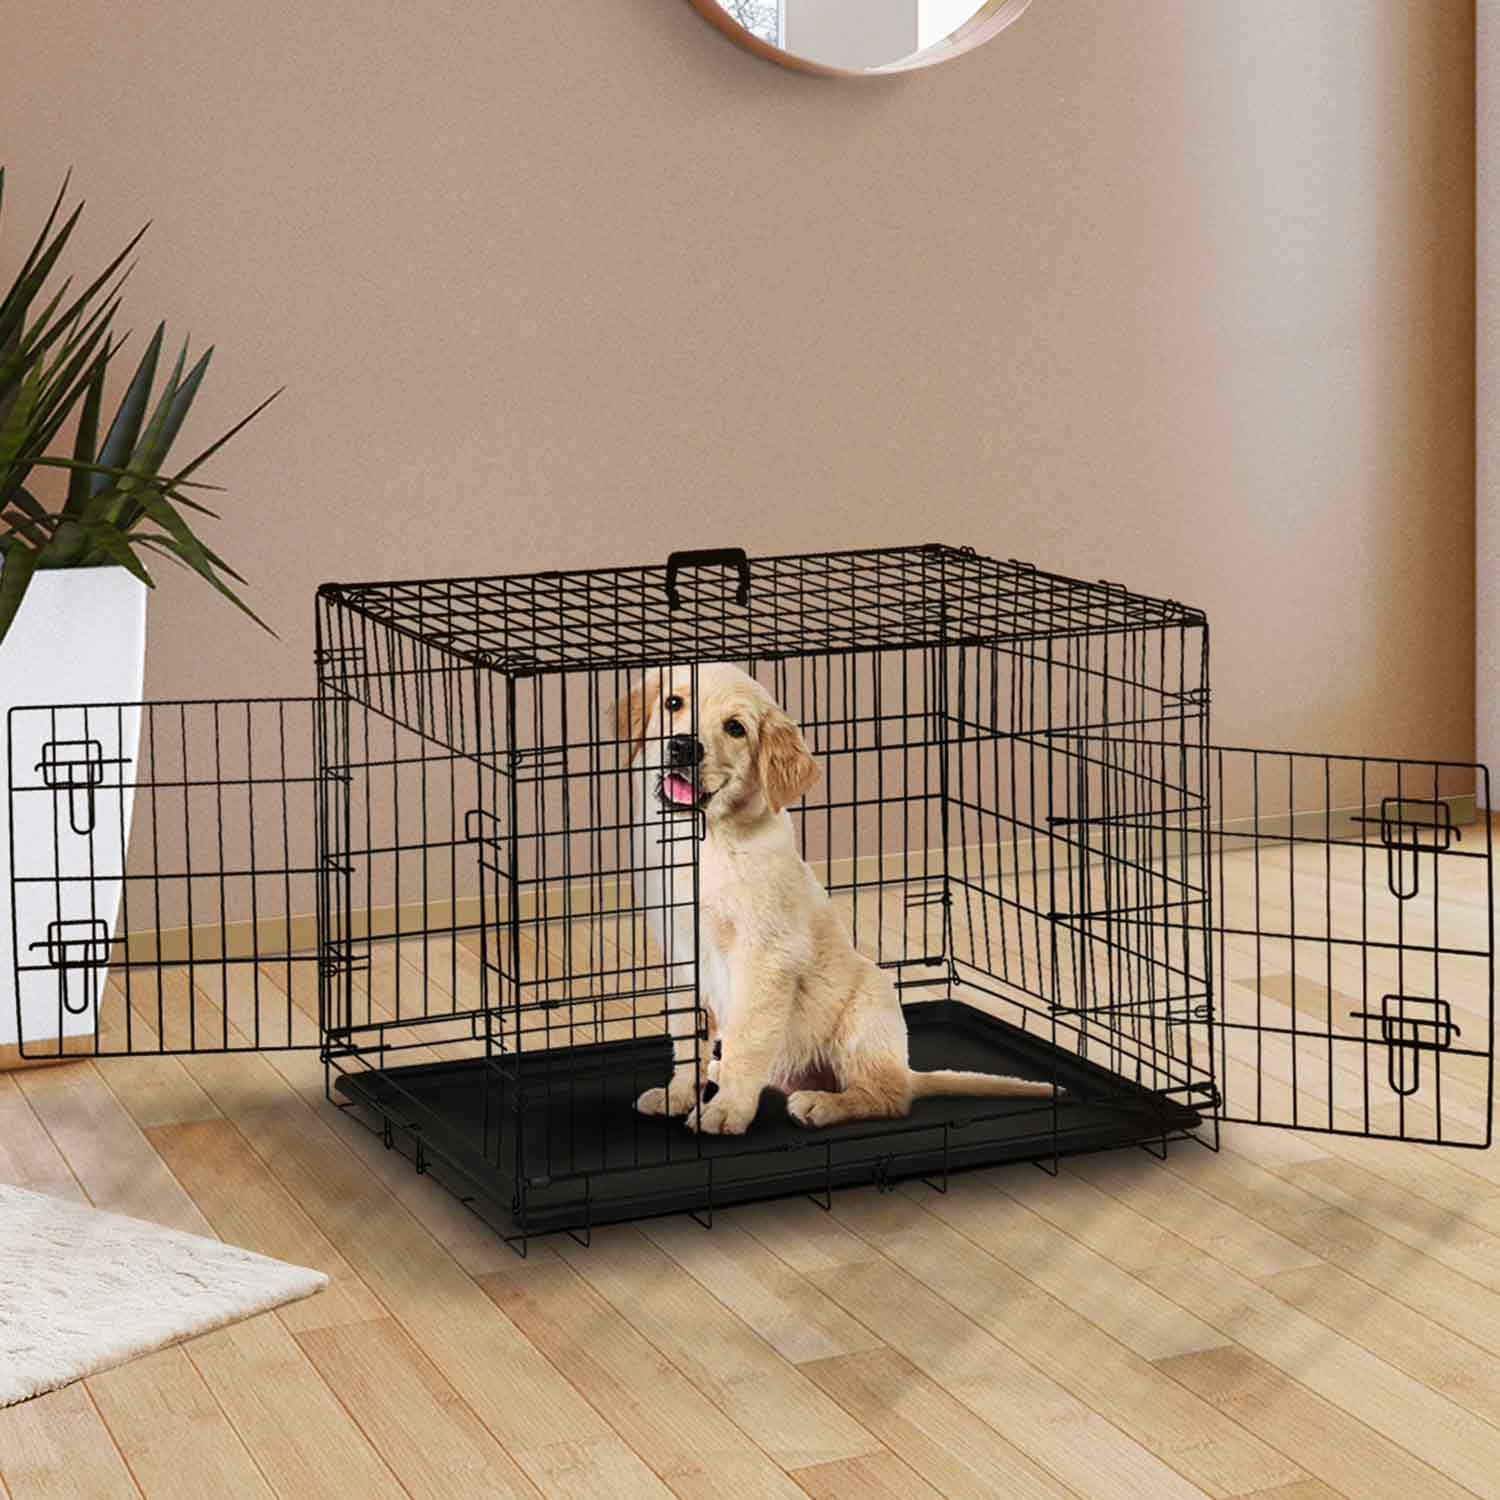 Les cages de transport pour chiens et chats